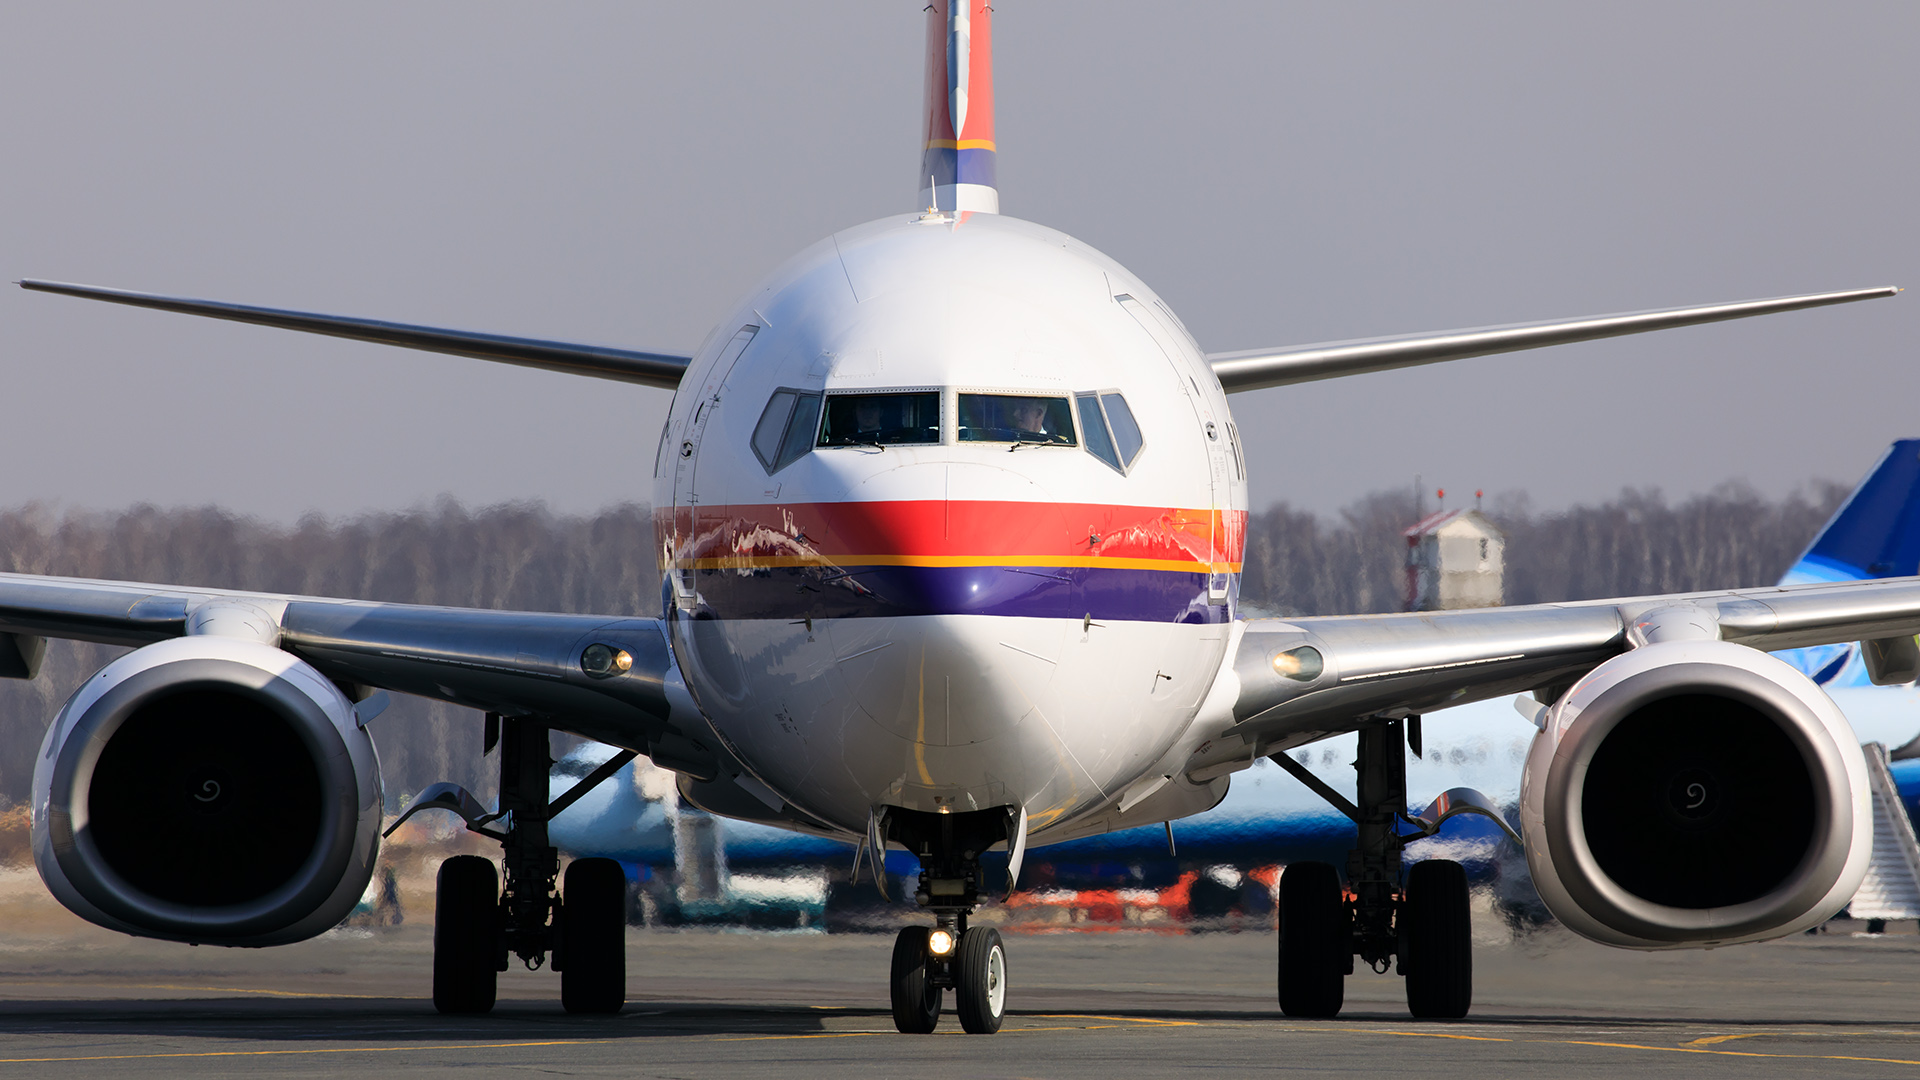 Авиакомпания meridiana fly: официальный сайт на русском языке, отзывы